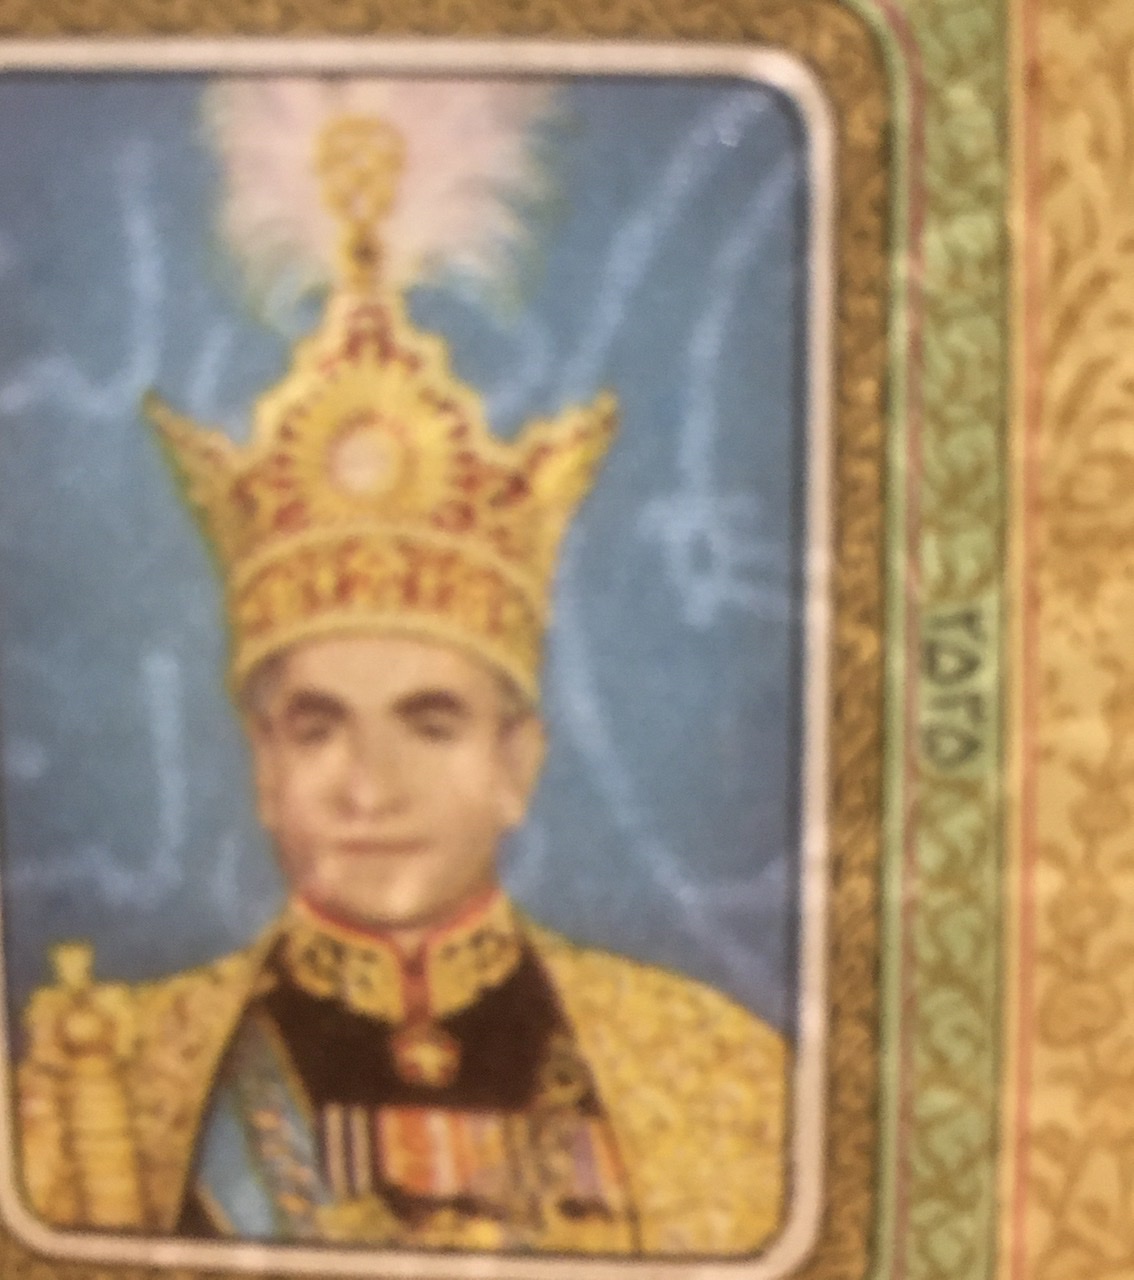 تمبر زیبا و کمیاب ٣۵ سال شهریاری محمدرضا شاه پهلوی